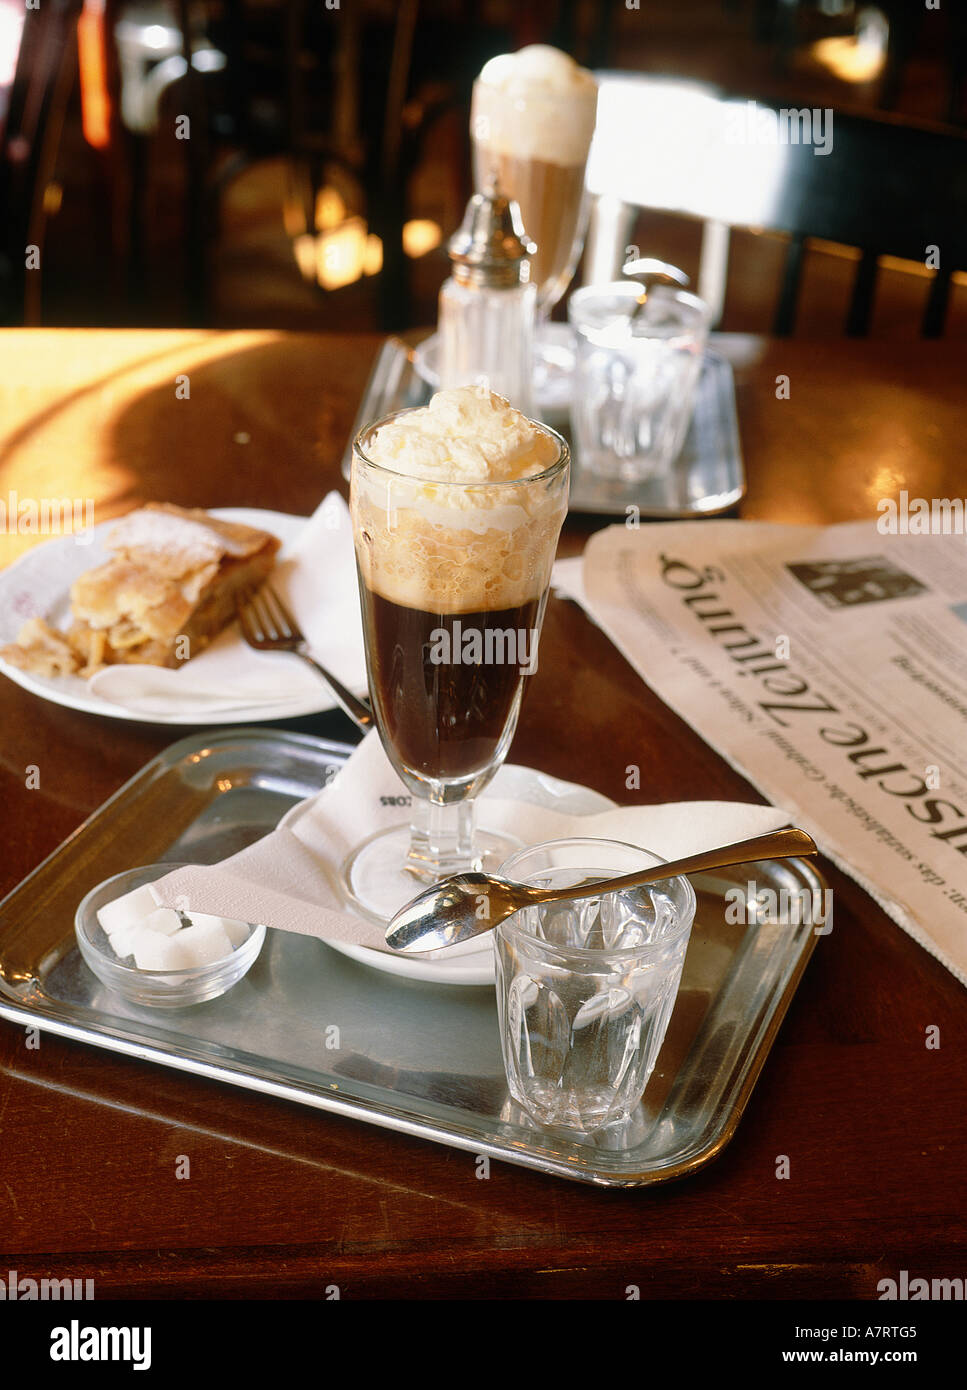 Österreich, Wien, Café Stern, Wiener Kaffee Stockfotografie - Alamy